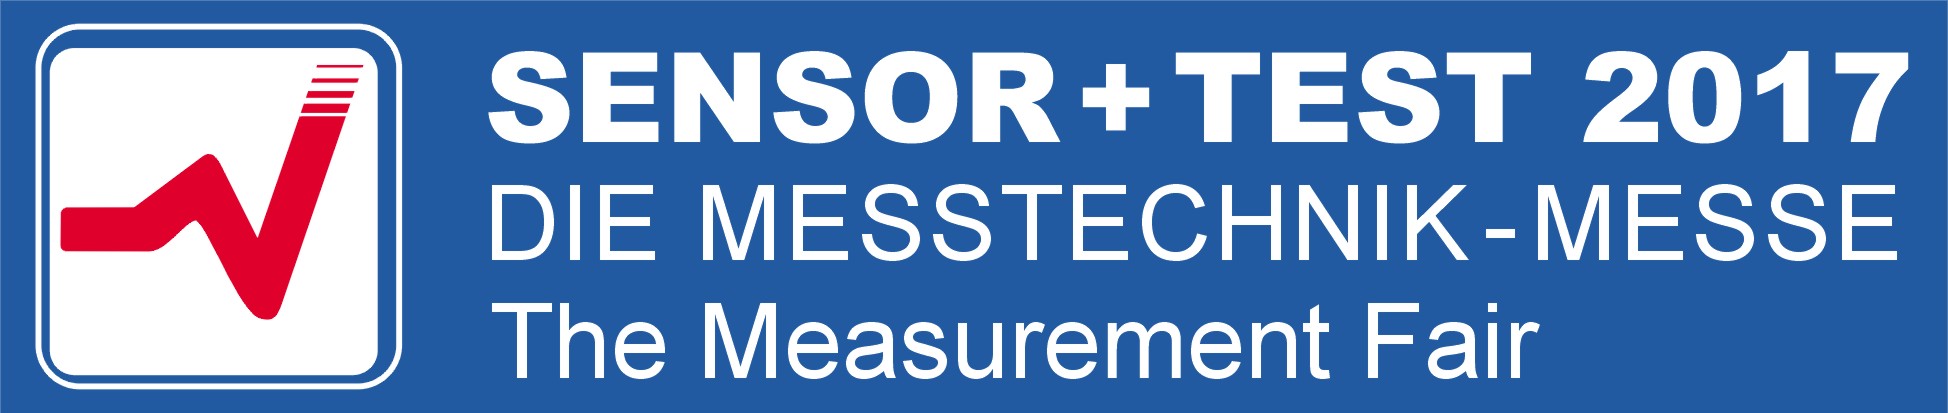 Logo-und-Titel-SENSOR+TEST-2017.jpg